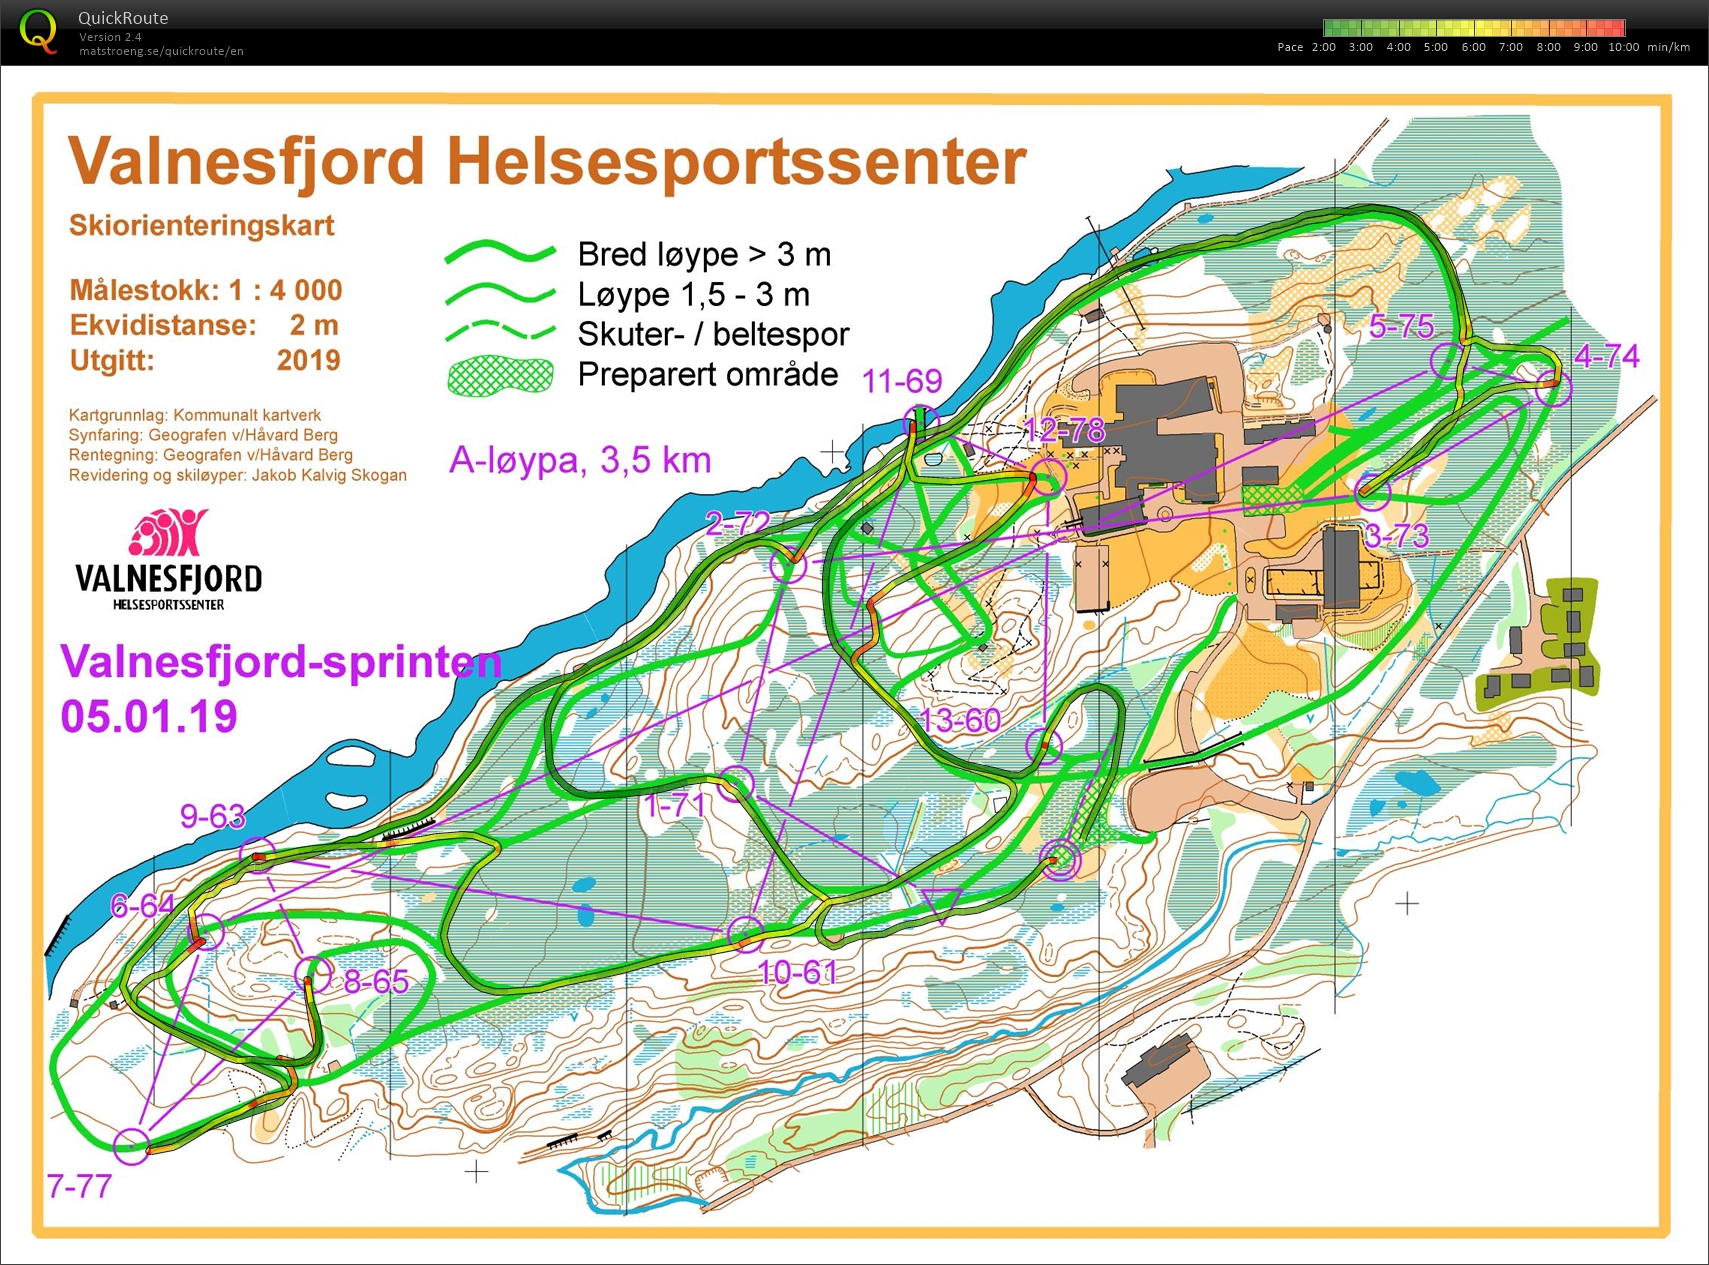 Valnesfjordsprinten Skiorientering (05.01.2020)